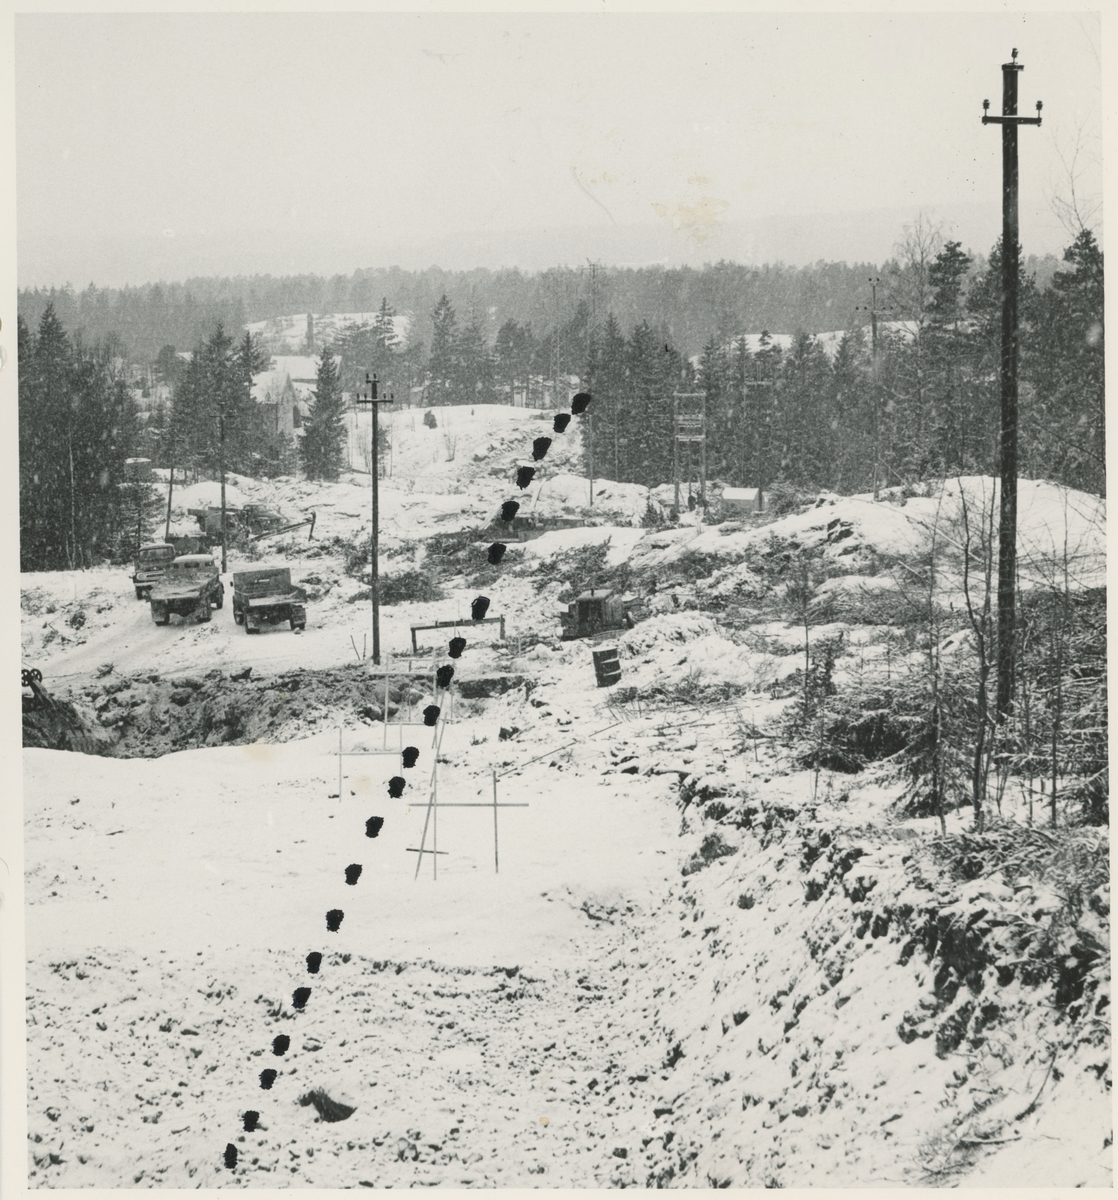 Vinterbilde fra Tigerplassen, 1970-årene. Innfartsveien under bygging.
Rute prikket opp med tusj over originalt foto.